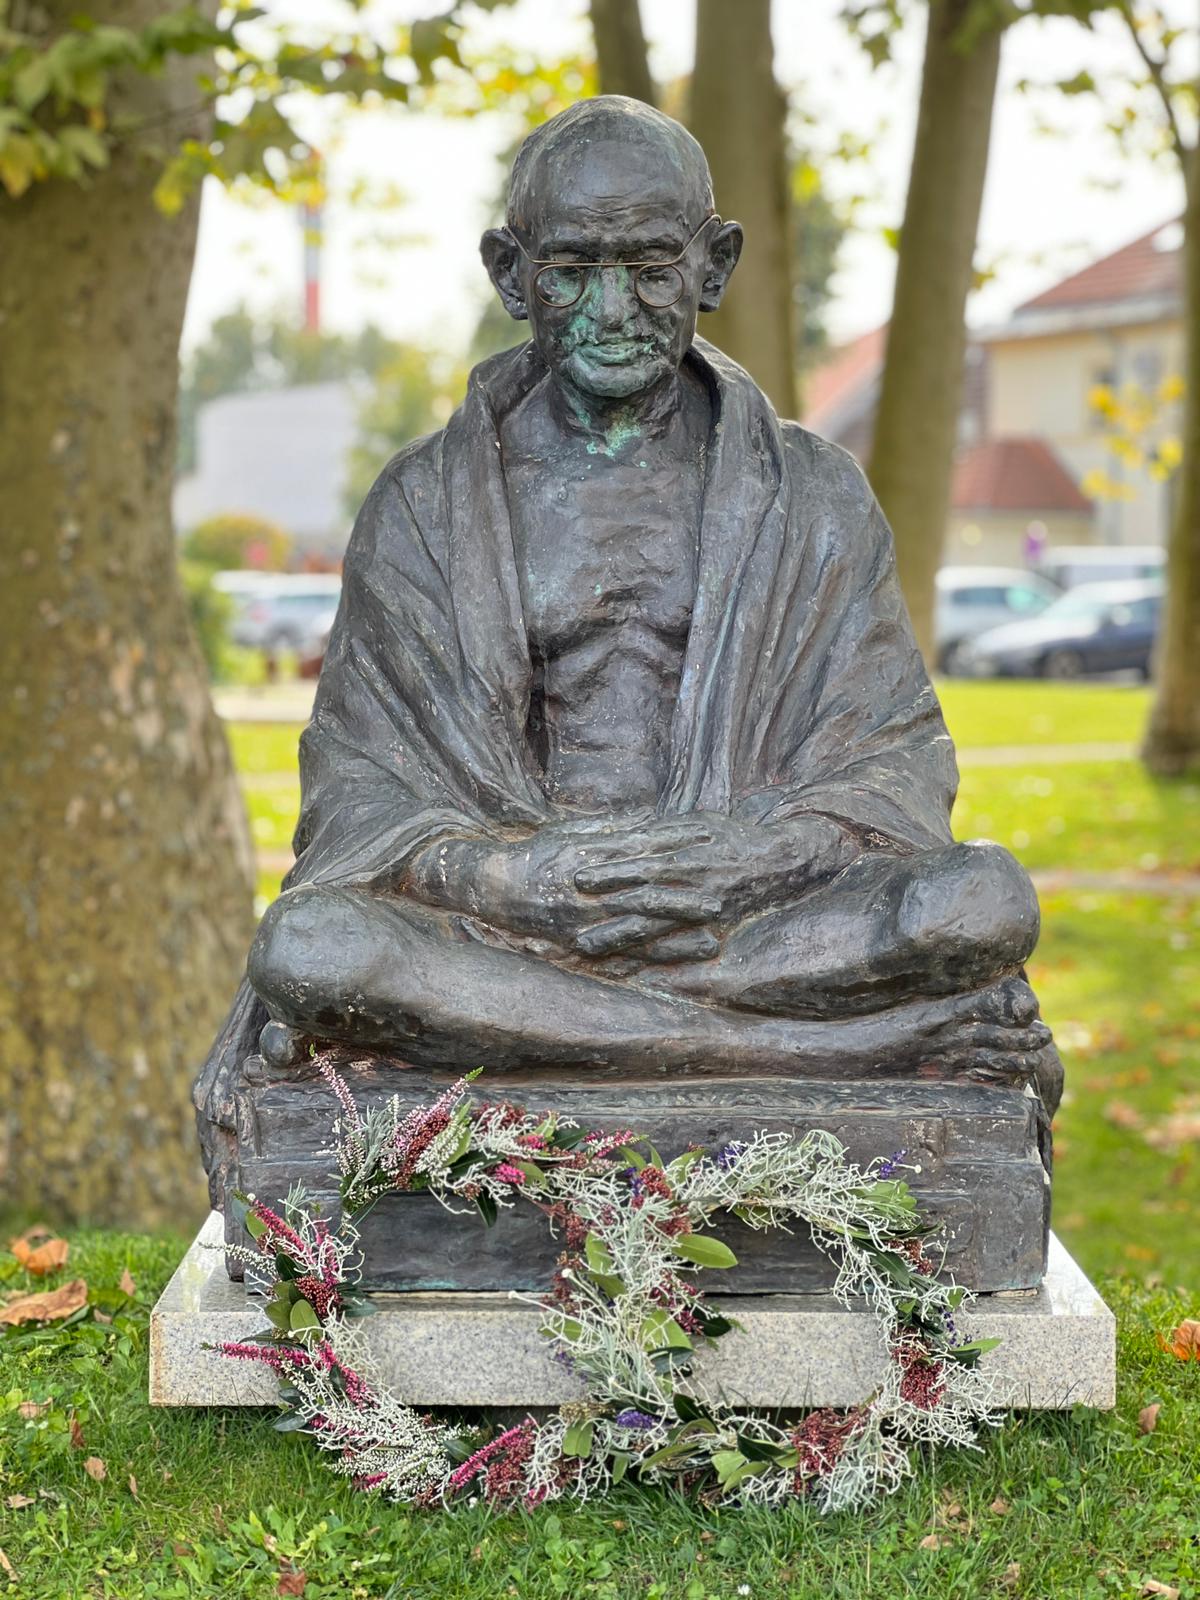 Birth Anniversary of Mahatma Gandhi in Slovenj Gradec on 2 October 2021